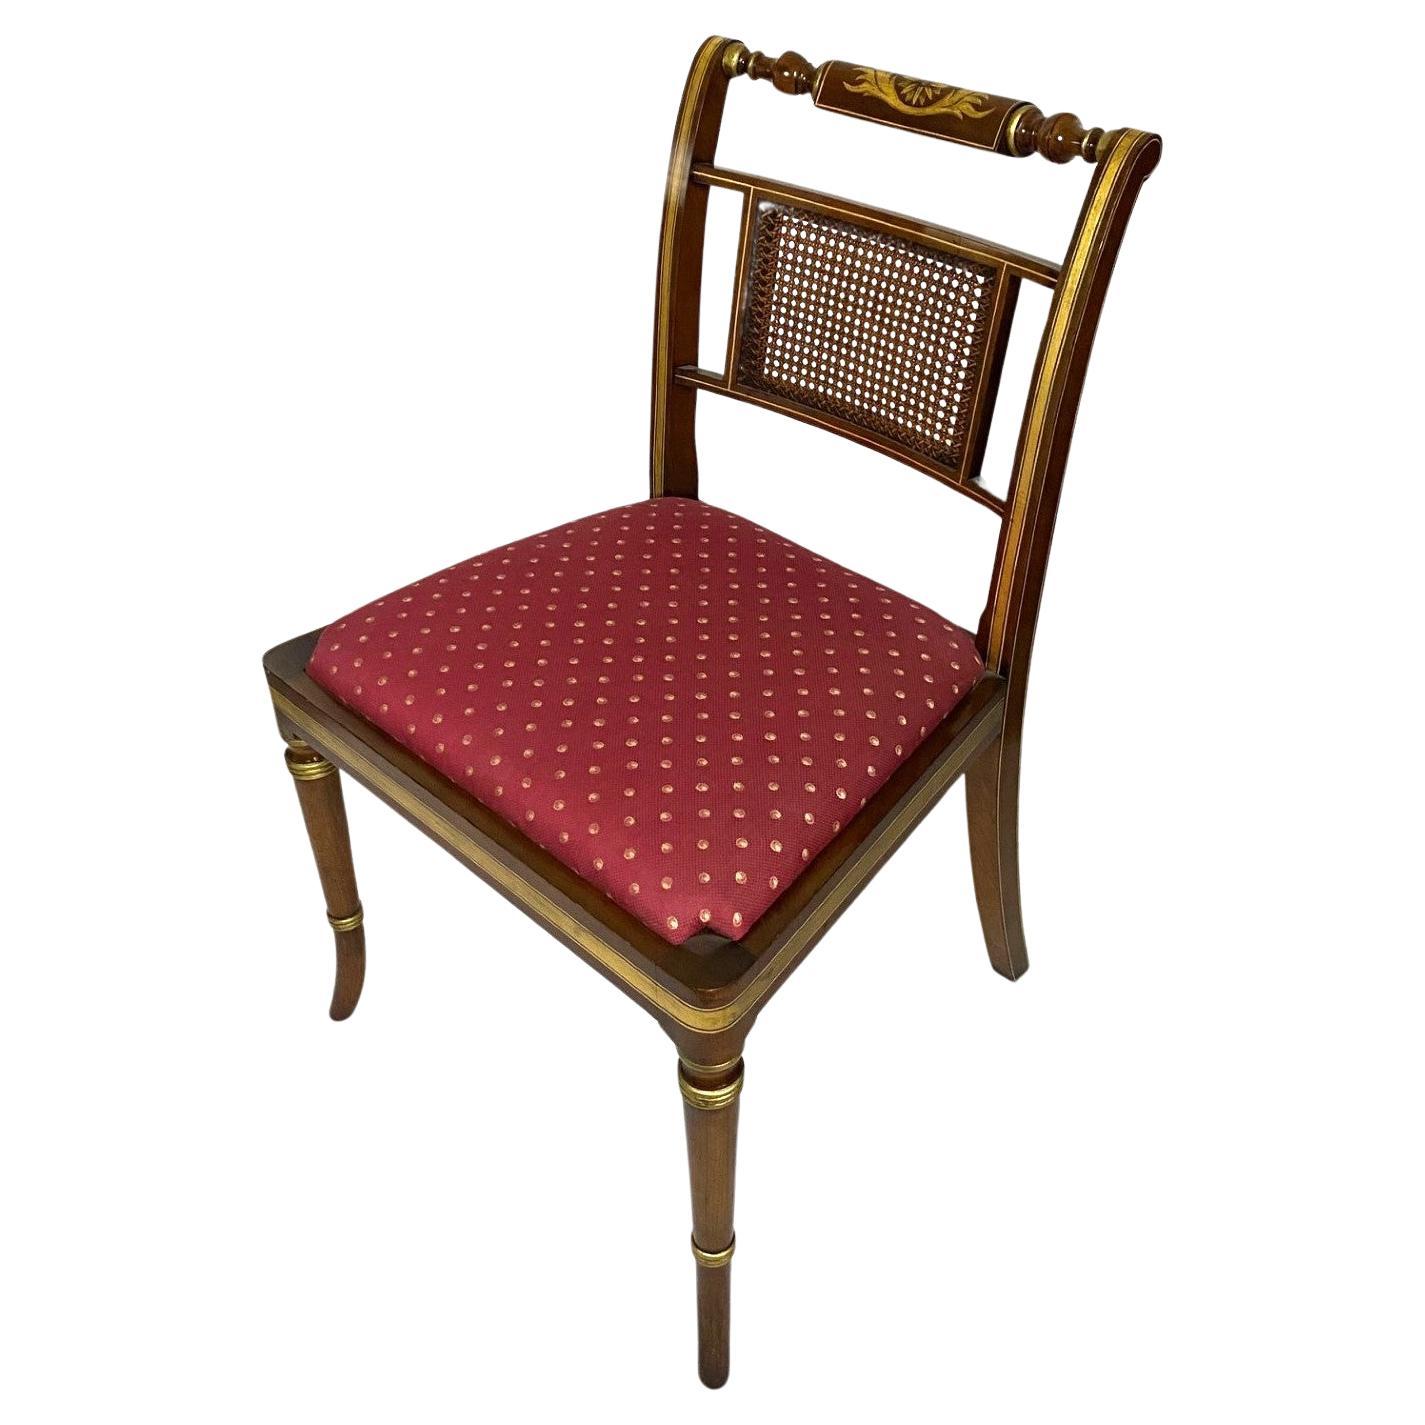 Chaise d'appoint anglaise de style Regency avec décoration peinte à la main